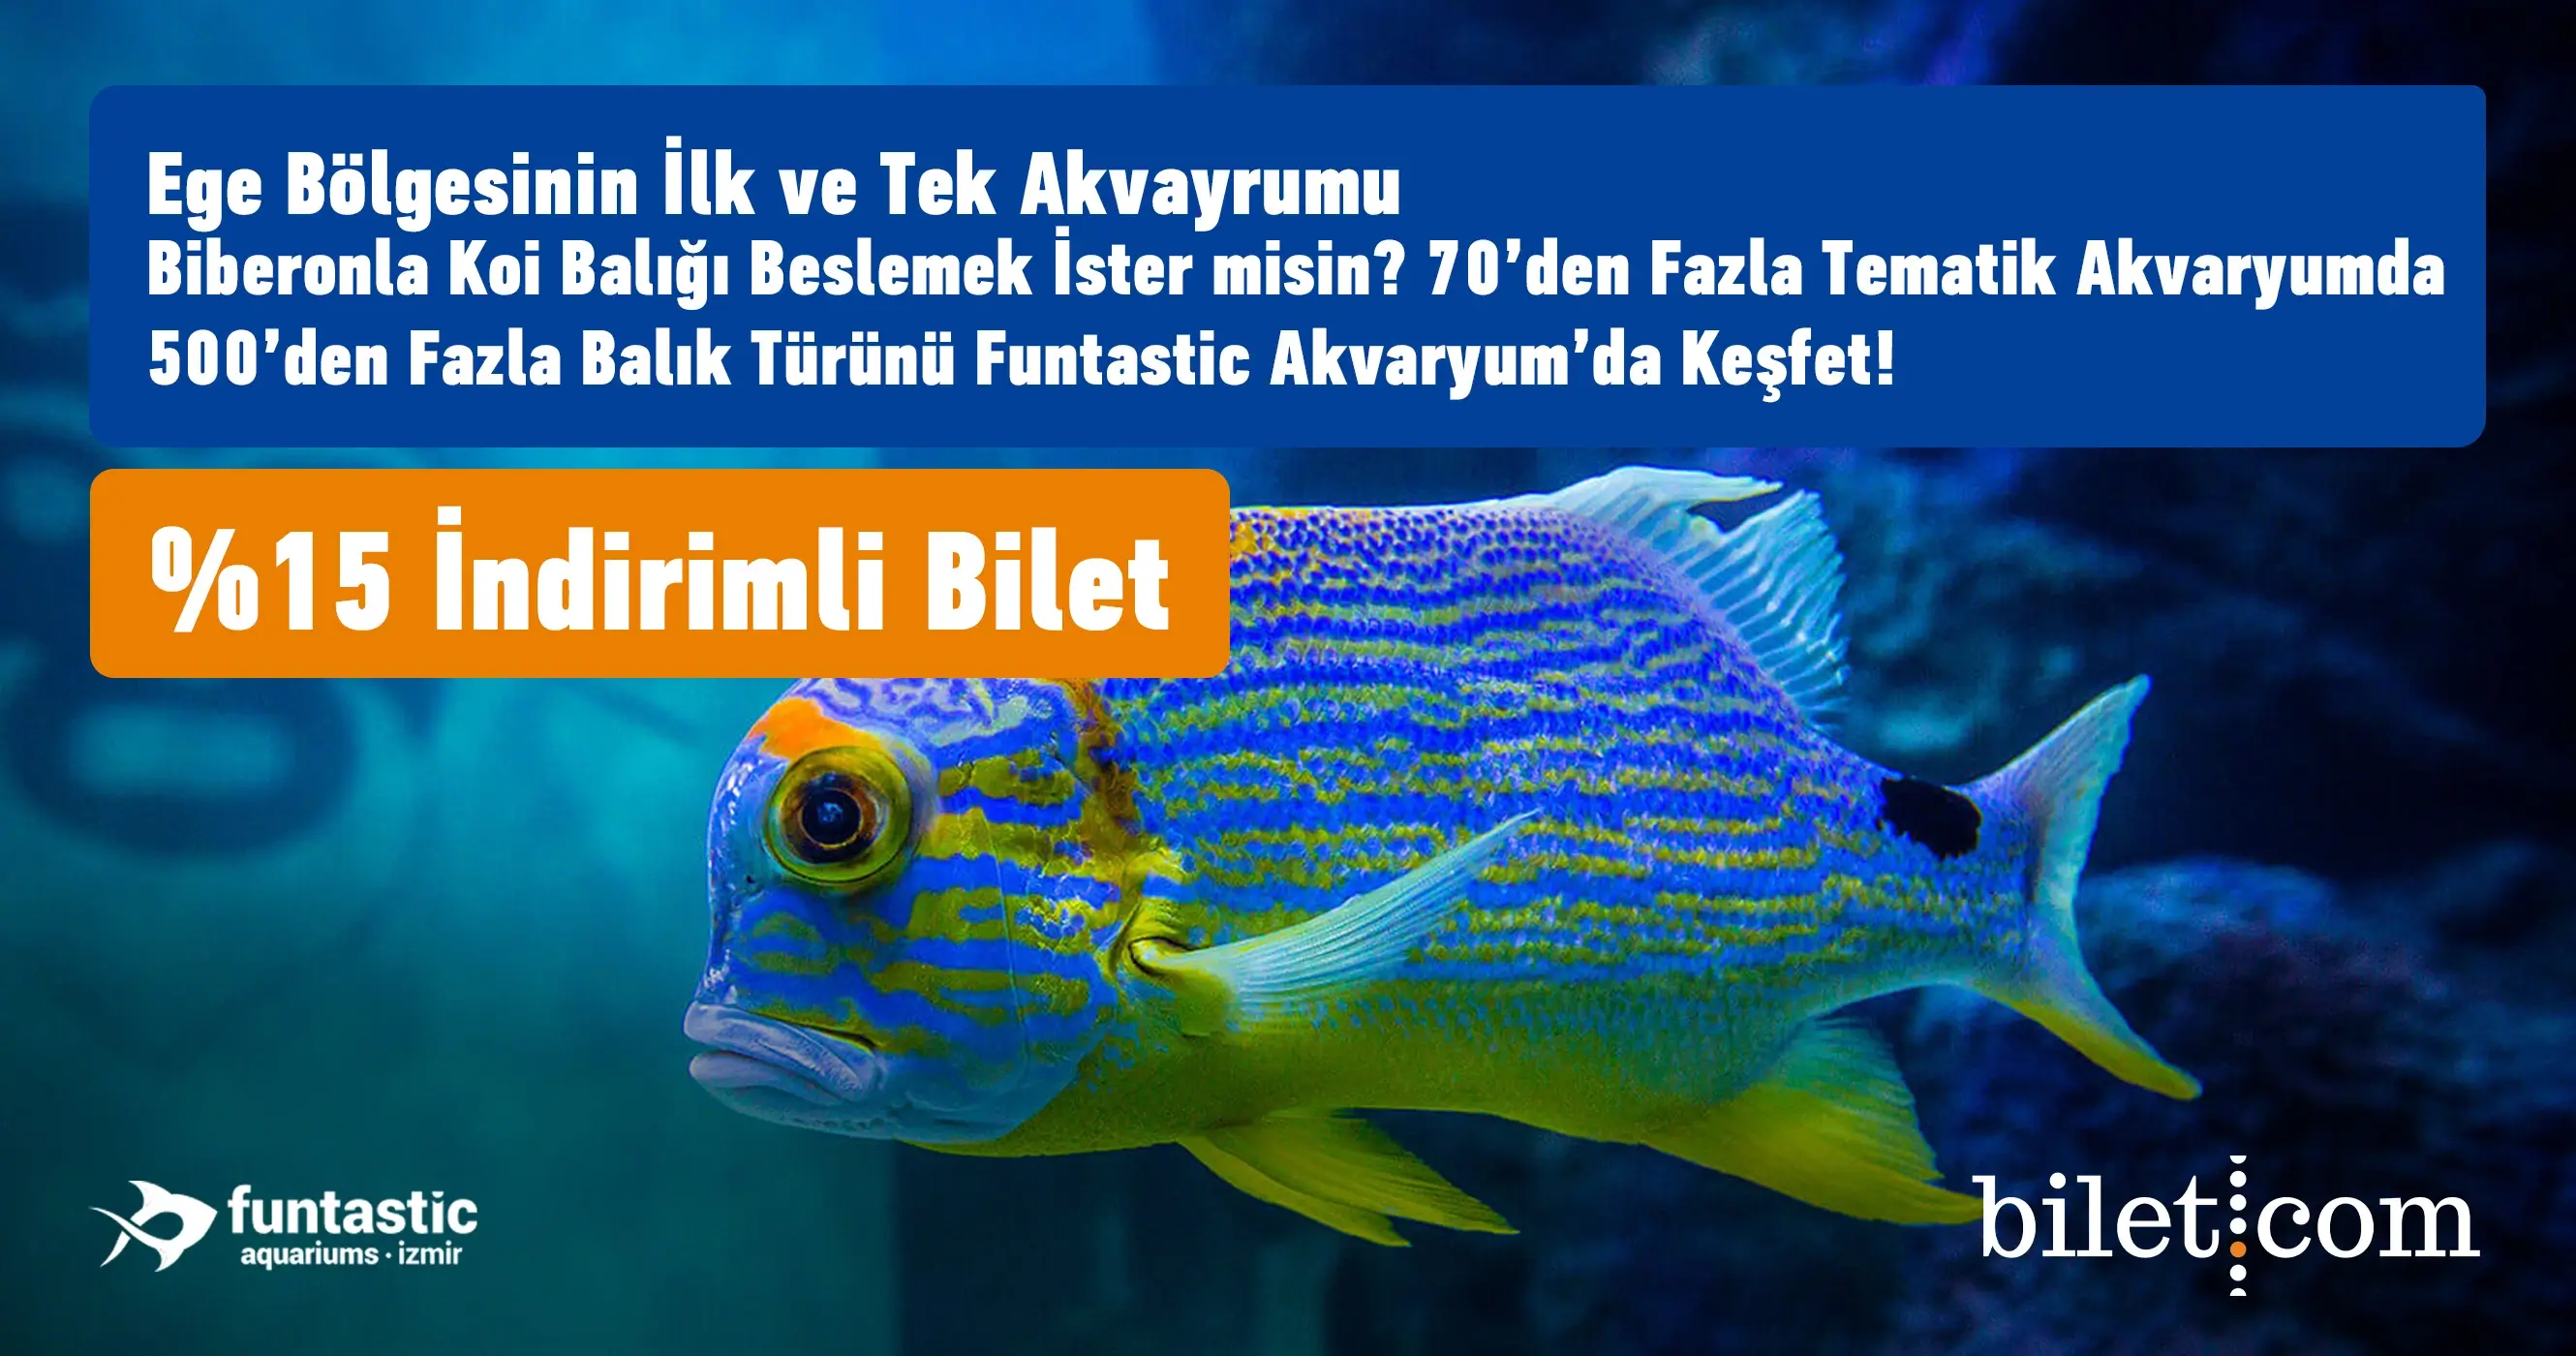 Фантастический аквариум Измира Билет - 1